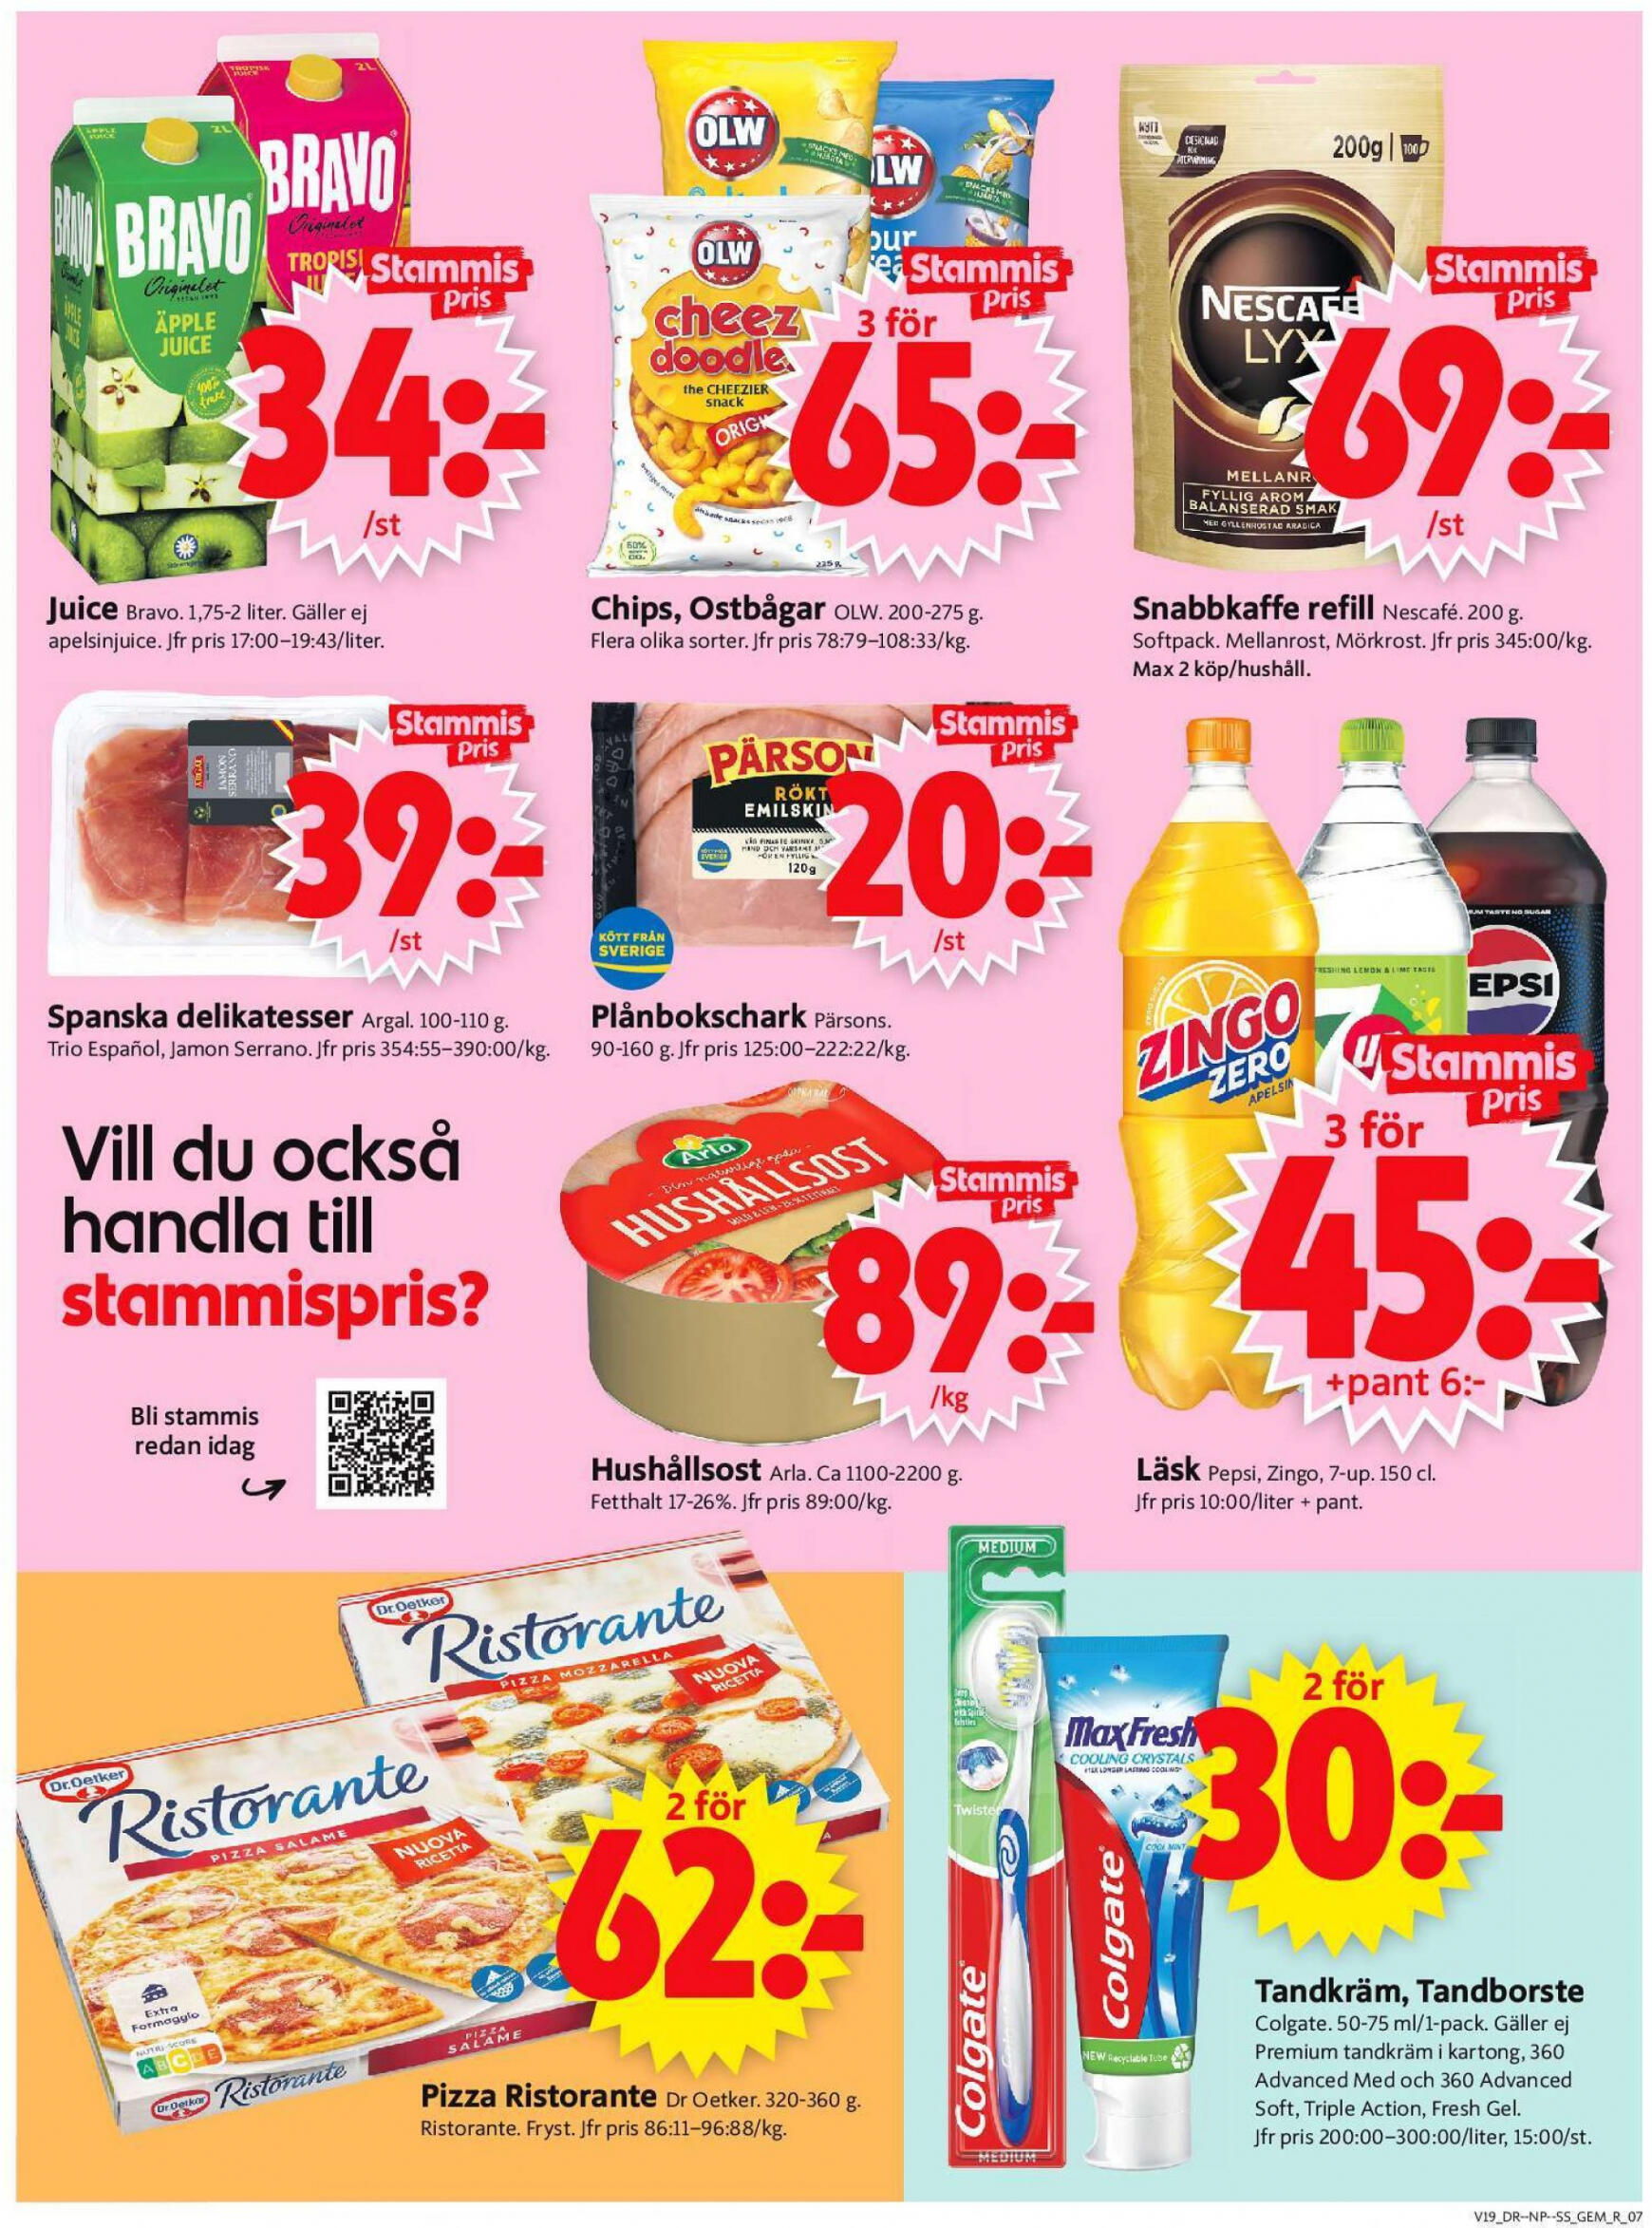 ica-supermarket - Flyer ICA Supermarket current 06.05. - 12.05. - page: 9